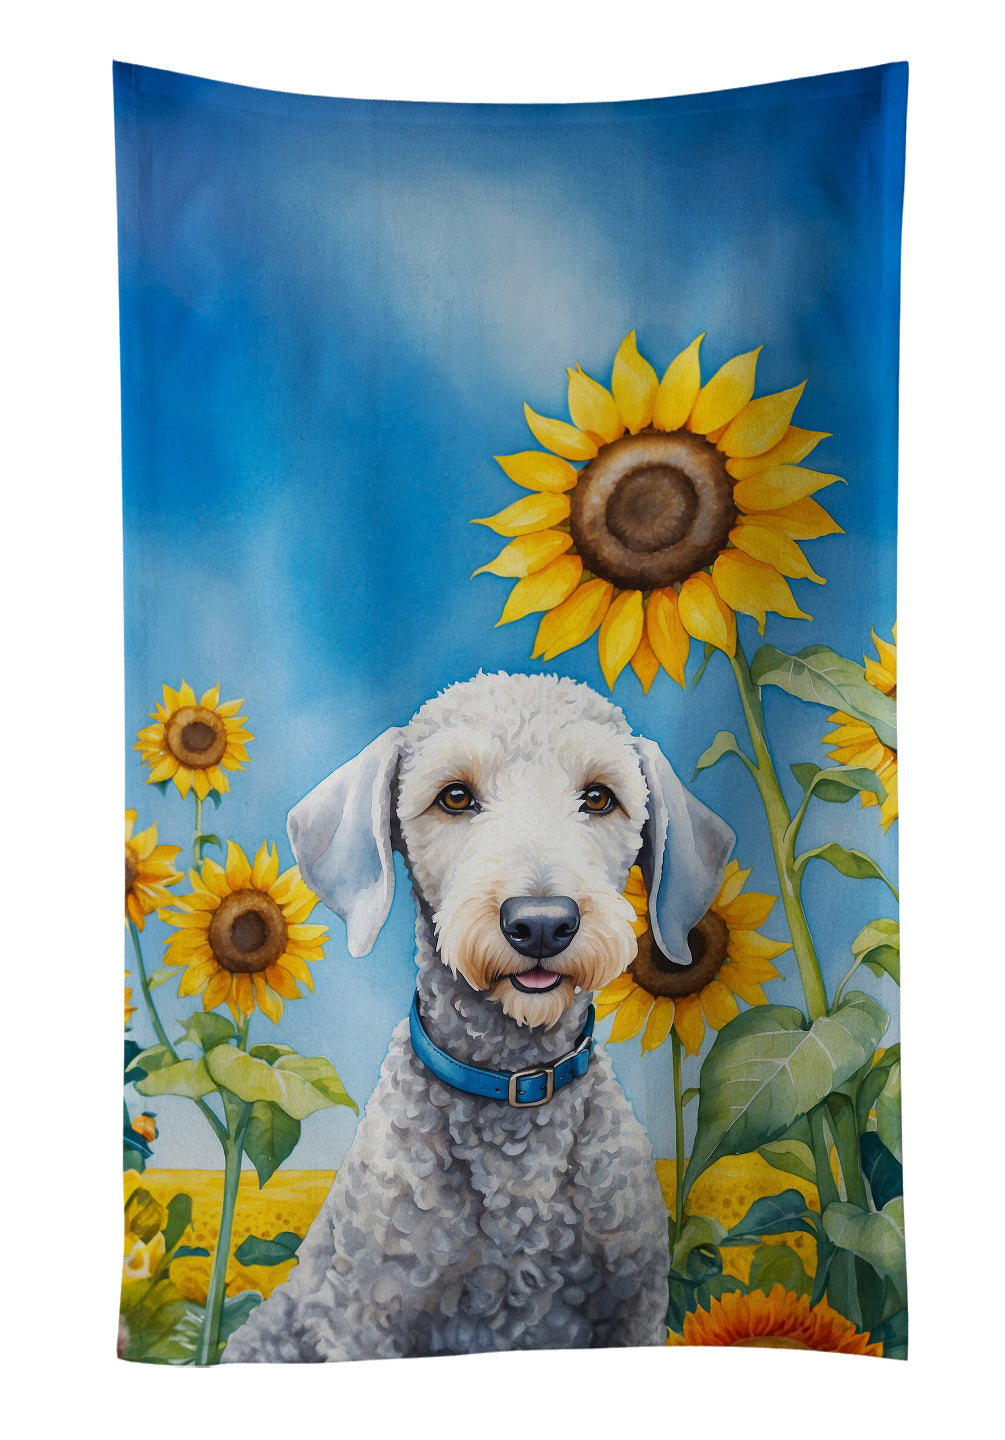 Buy this Bedlington Terrier in Sunflowers Kitchen Towel